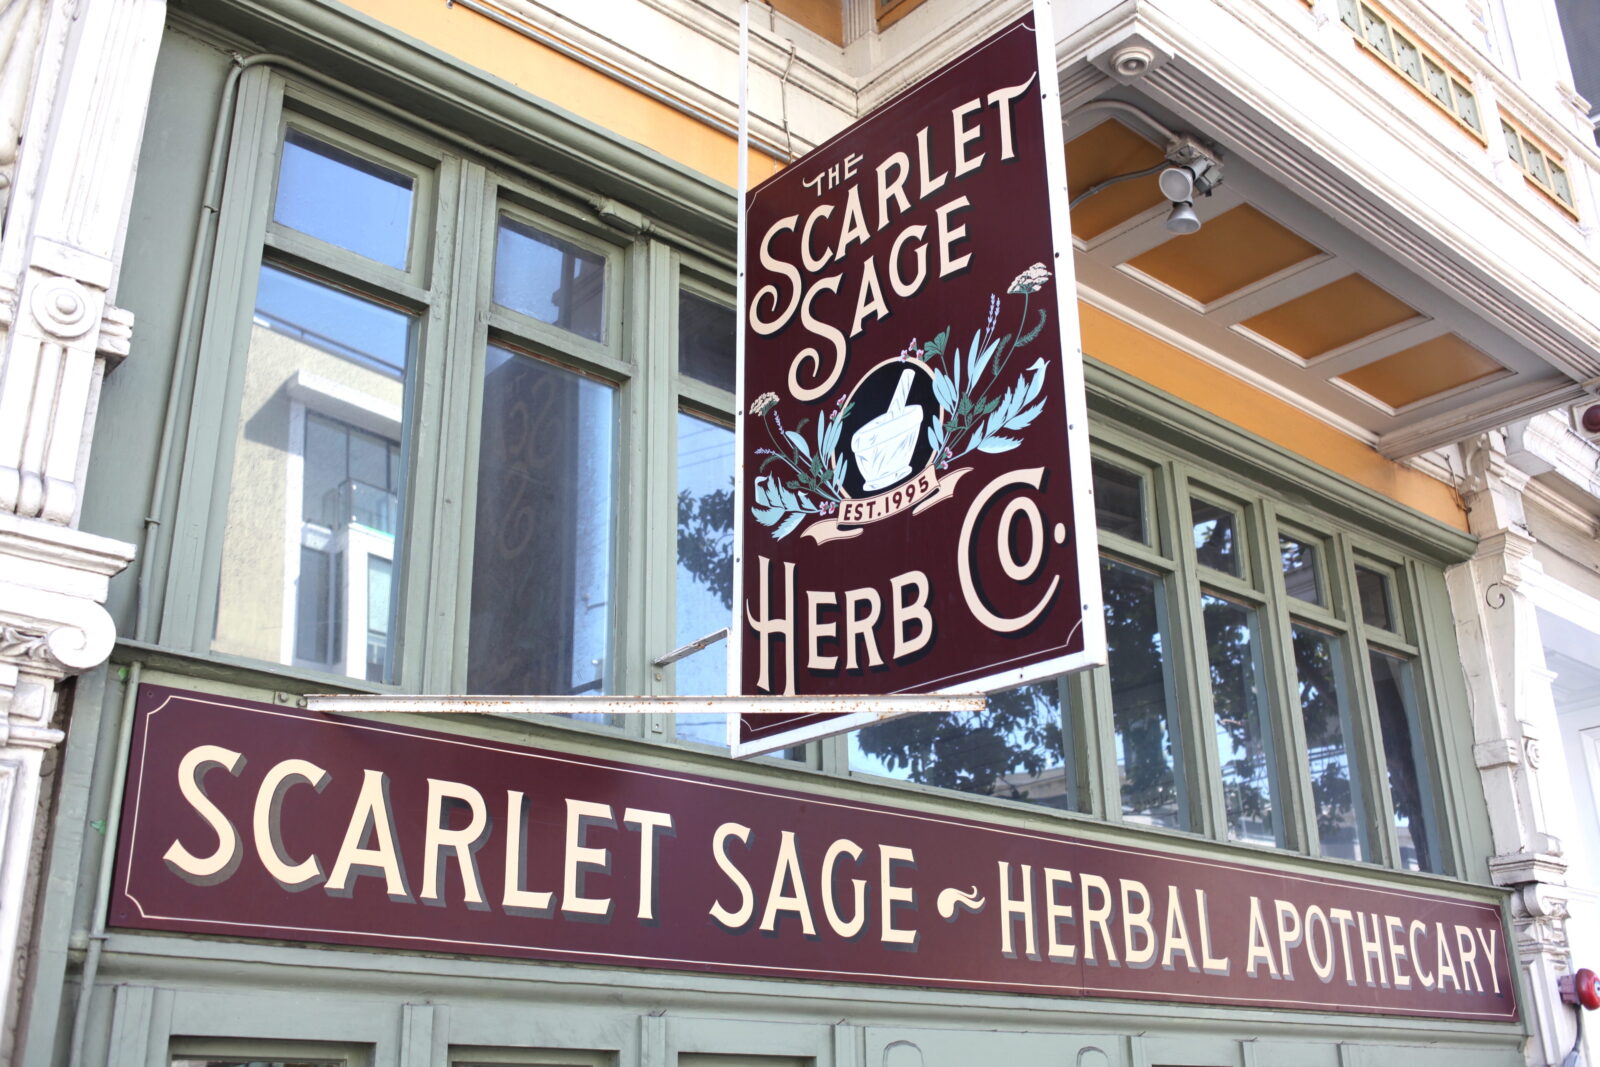 ハーブ専門店「The Scarlet Sage Herb Co.」のサイン